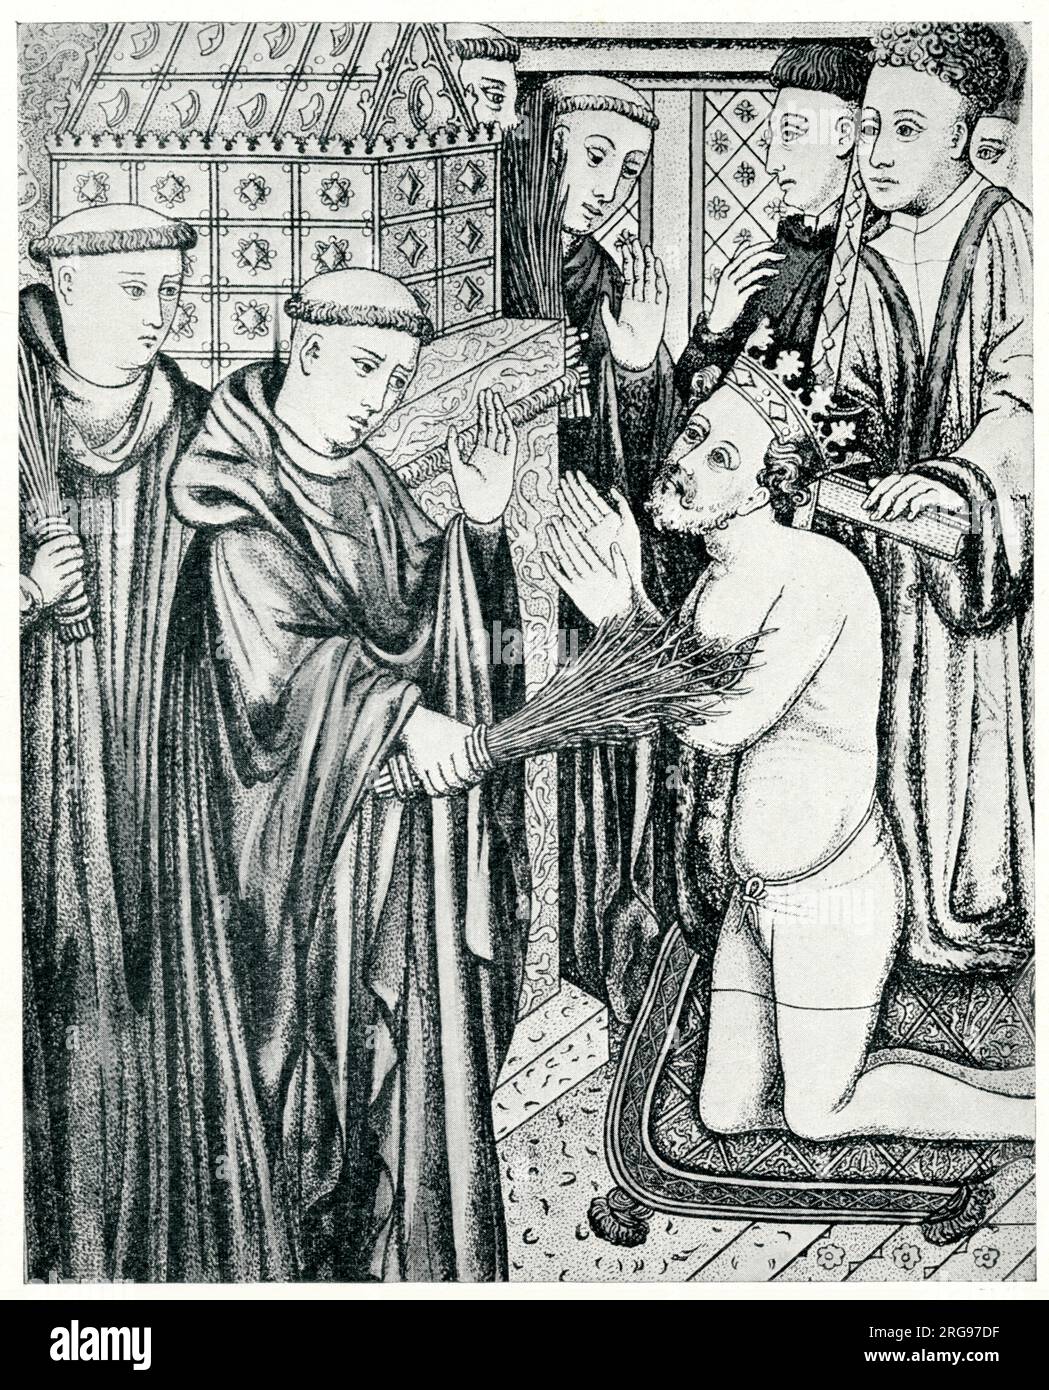 König Heinrich II., der vor dem Grab Beckets in der Kathedrale von Canterbury Buße tut. Bis zur Hüfte ausgezogen und kniend, wird er von Mönchen mit Birkenzweigen gegeißelt. Stockfoto